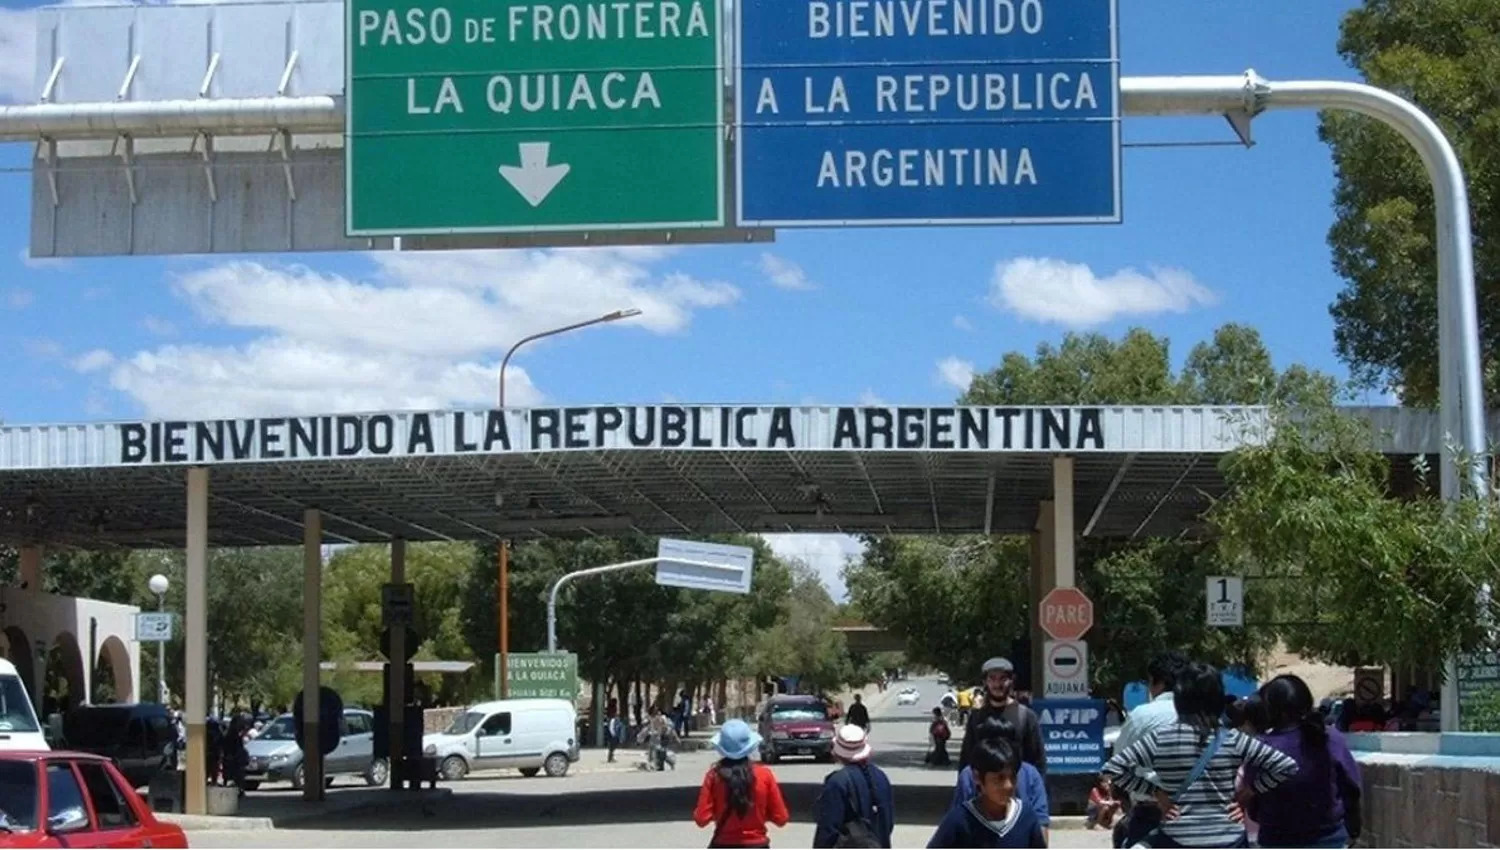 POR EL NORTE. Las nuevas flexibilizaciones regirán también en el paso fronterizo de La Quiaca-Yacuiba, que unen Argentina y Bolivia.